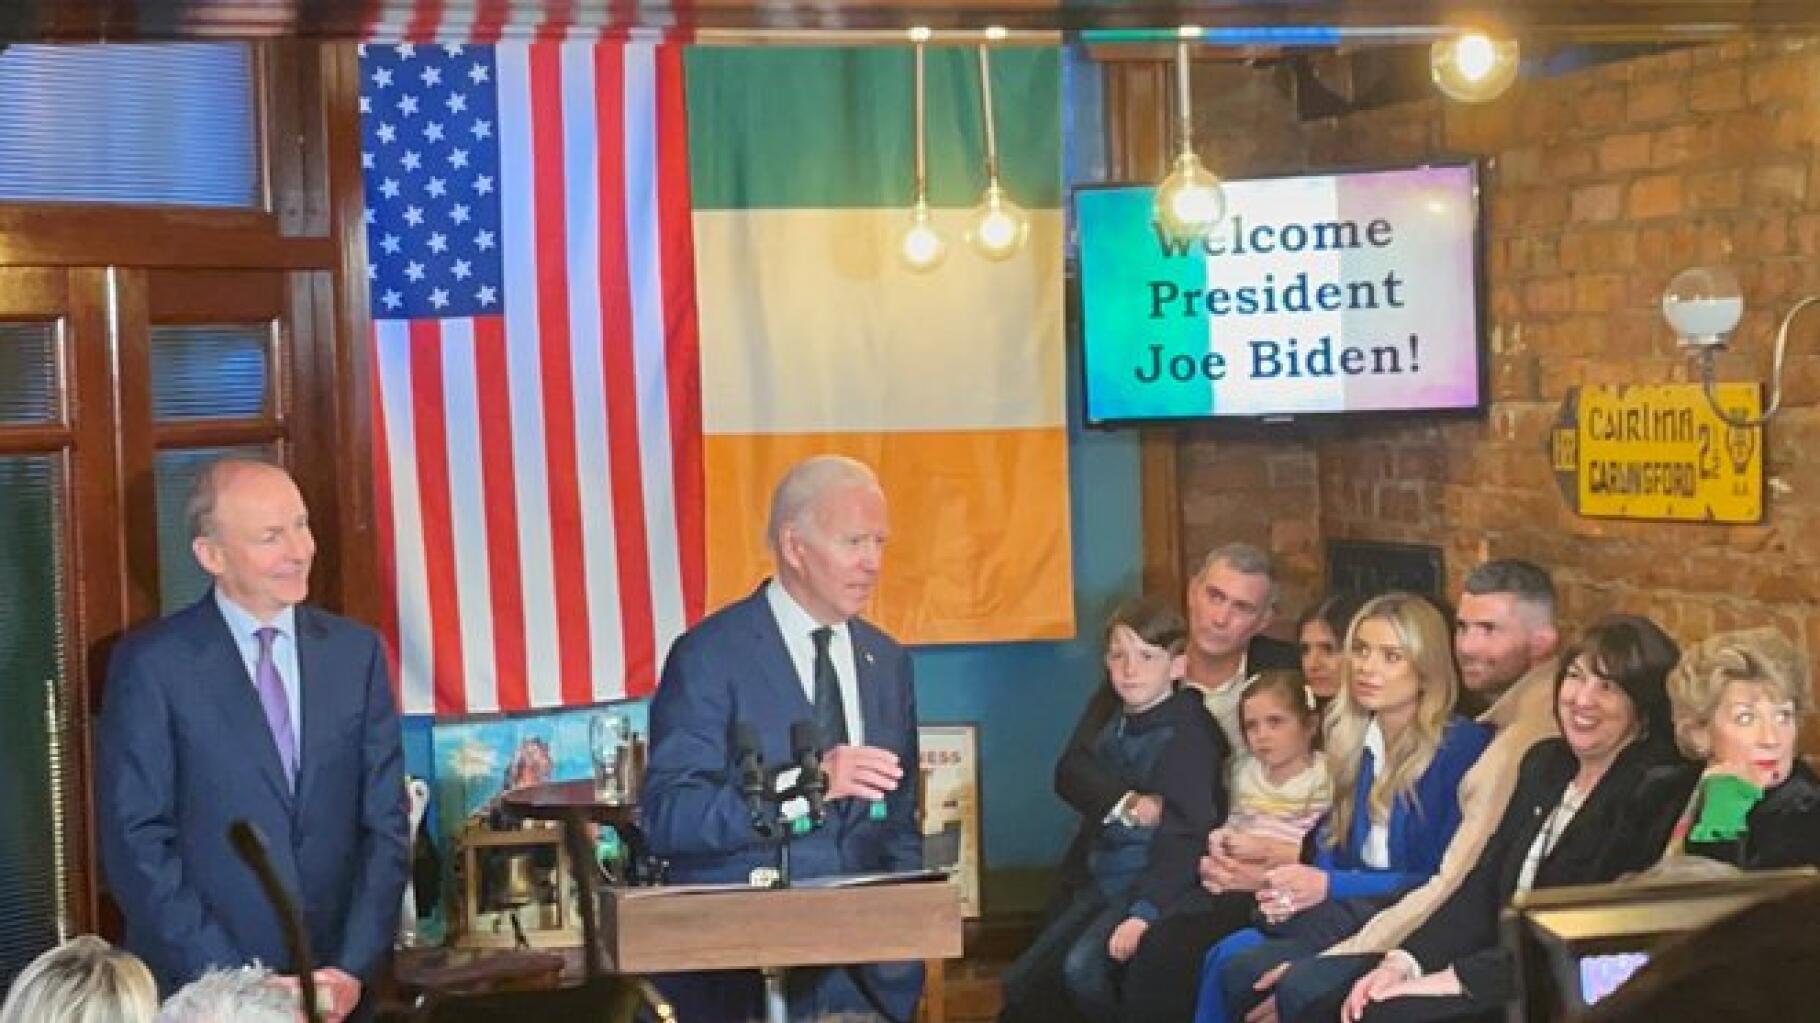 Joe Biden gets it wrong again in a pub in Ireland